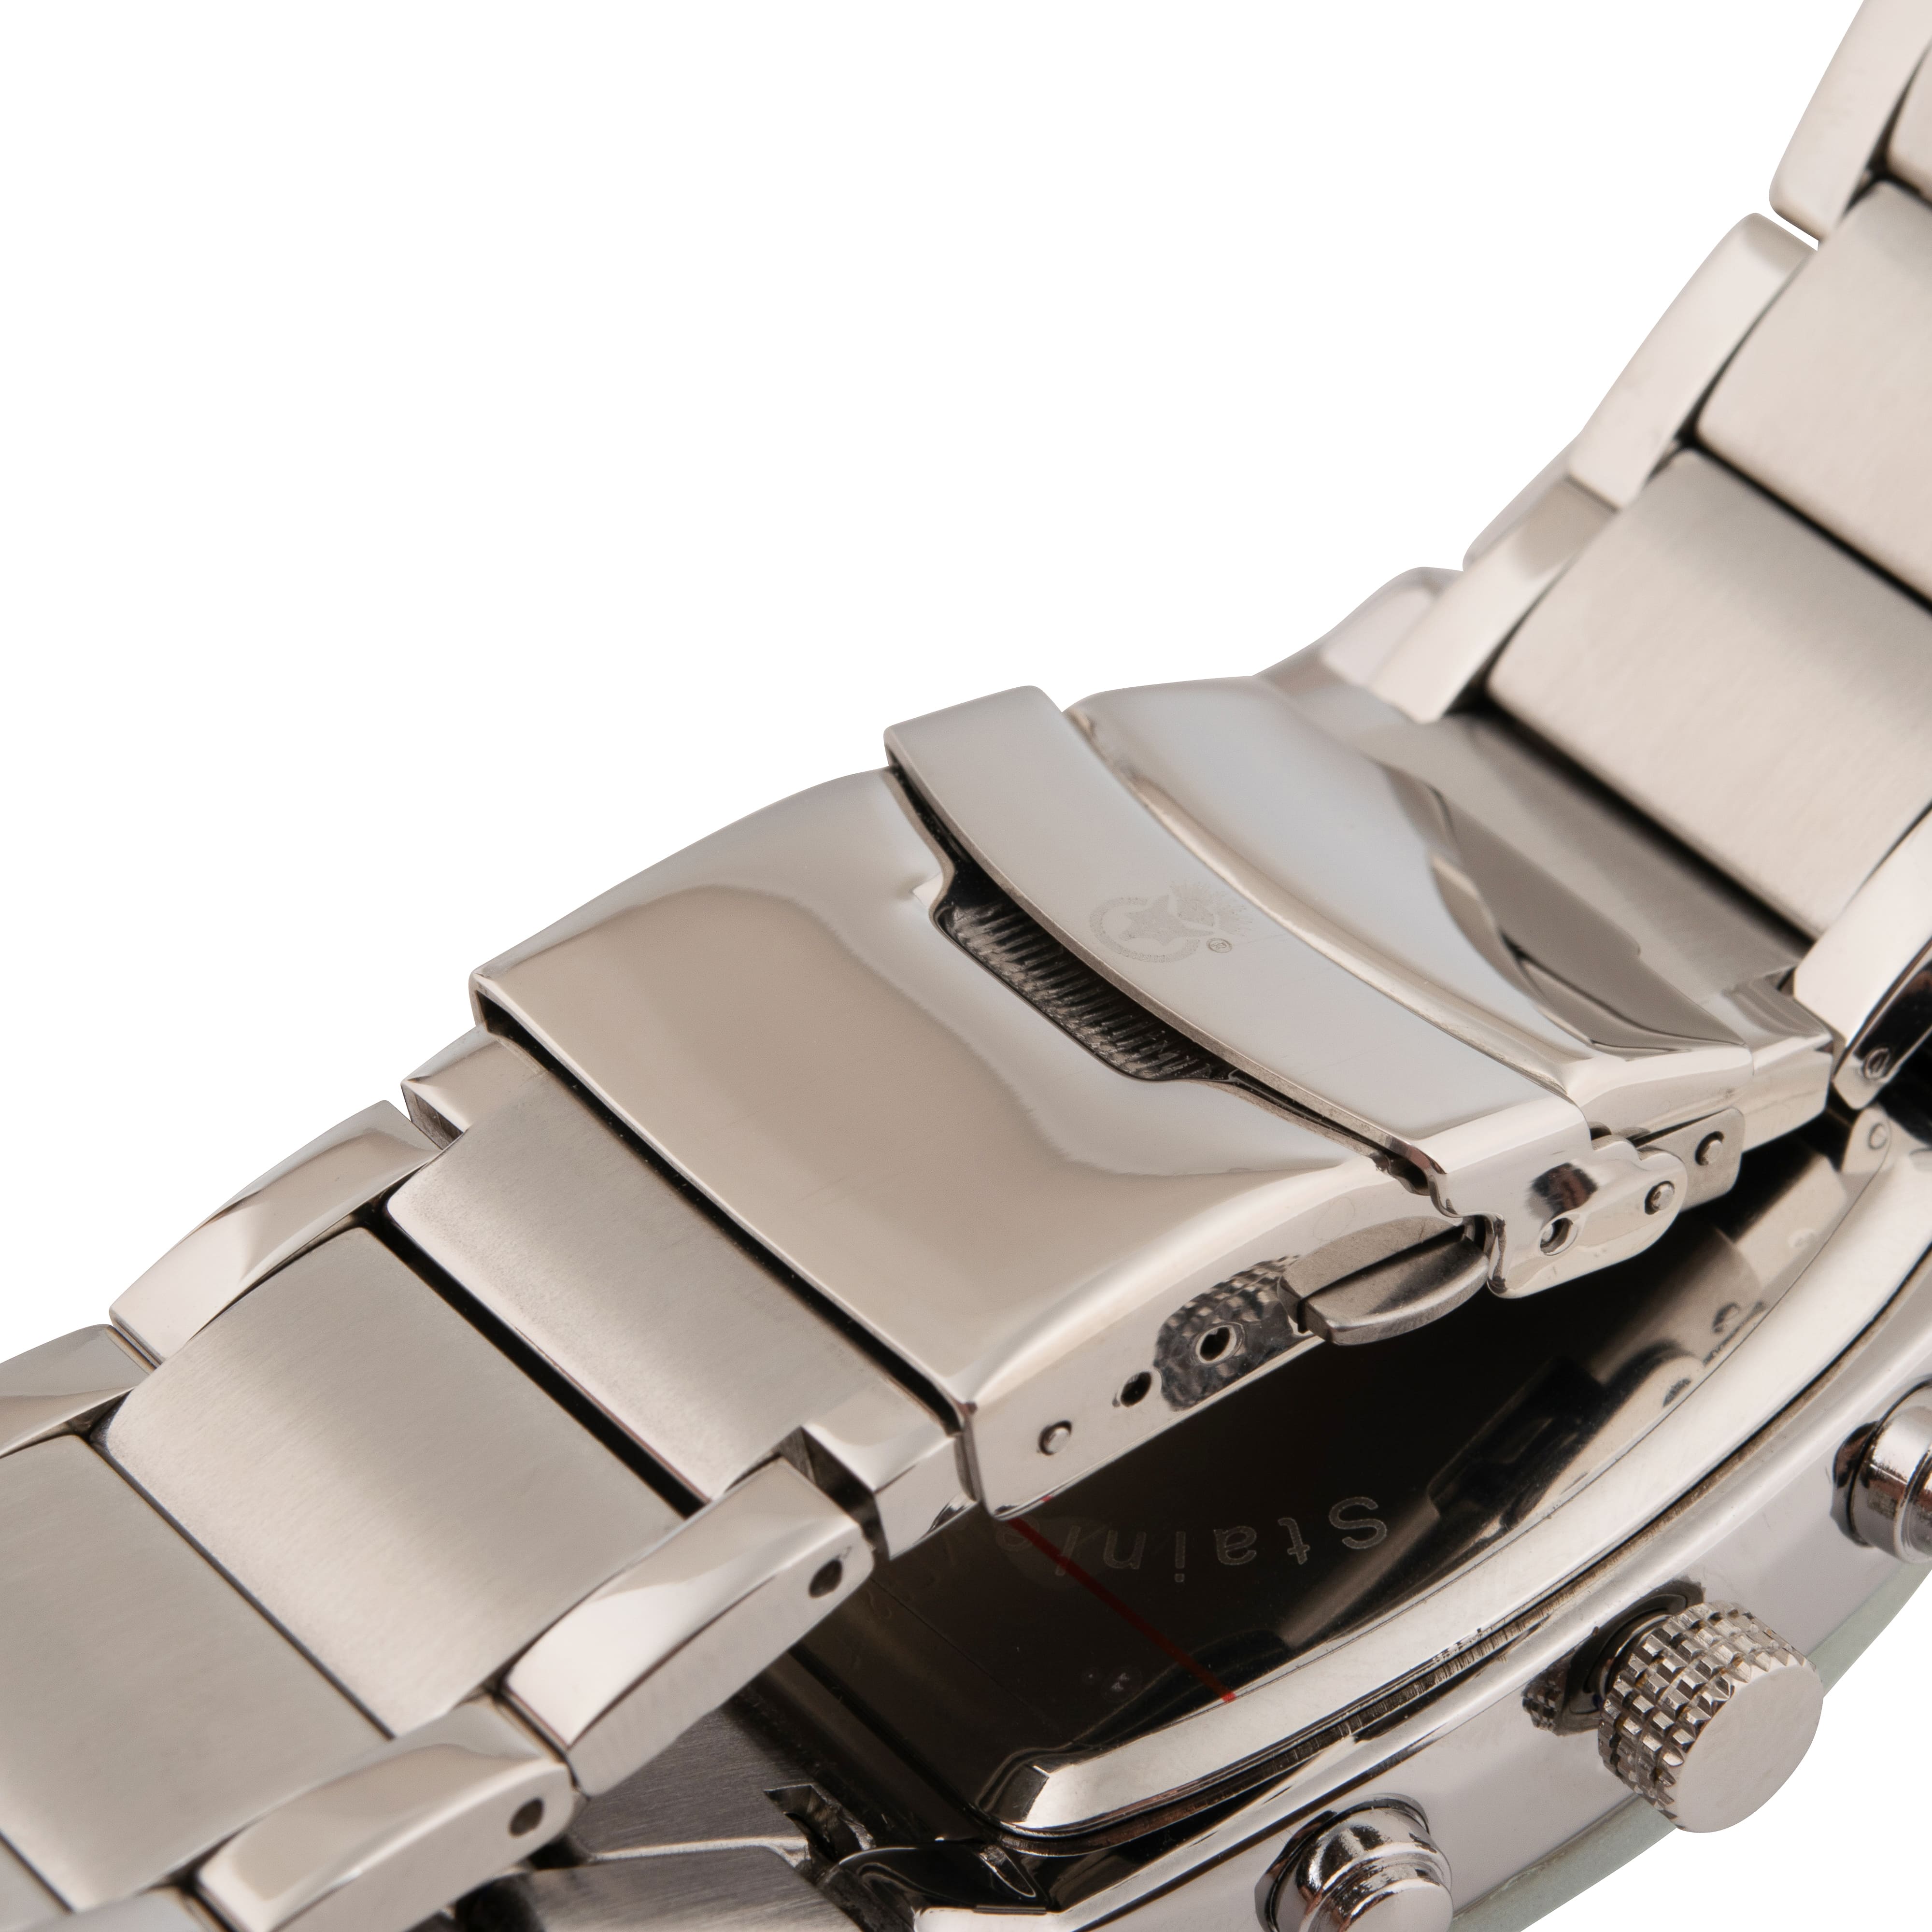 K.V. Fuchs Design Herren Quarzuhr analog Armbanduhr mit Faltschließe in braun, silber mit Edelstahlarmband in silber »U-99-01-Braun-Silber«